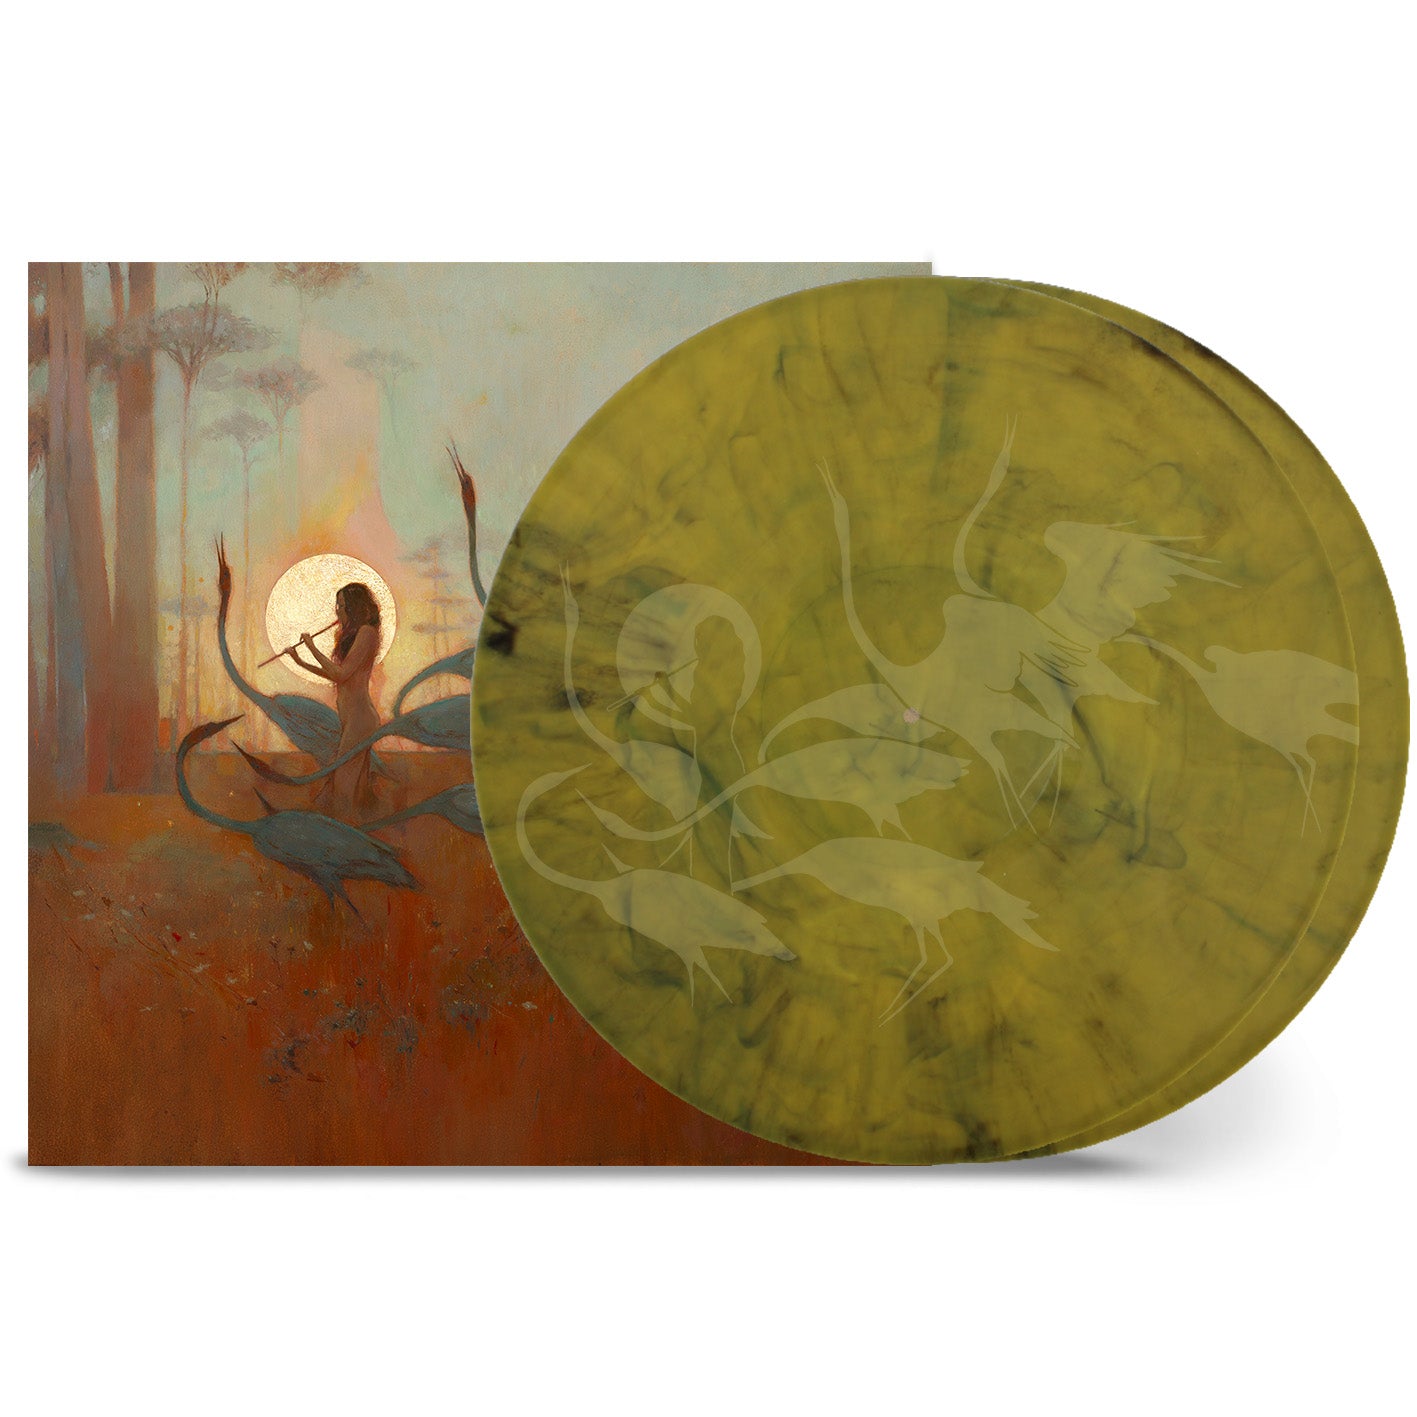 Alcest "Les Chants de l'Aurore" Deluxe 2x12" Black / Yellow Marbled Vinyl - PRE-ORDER